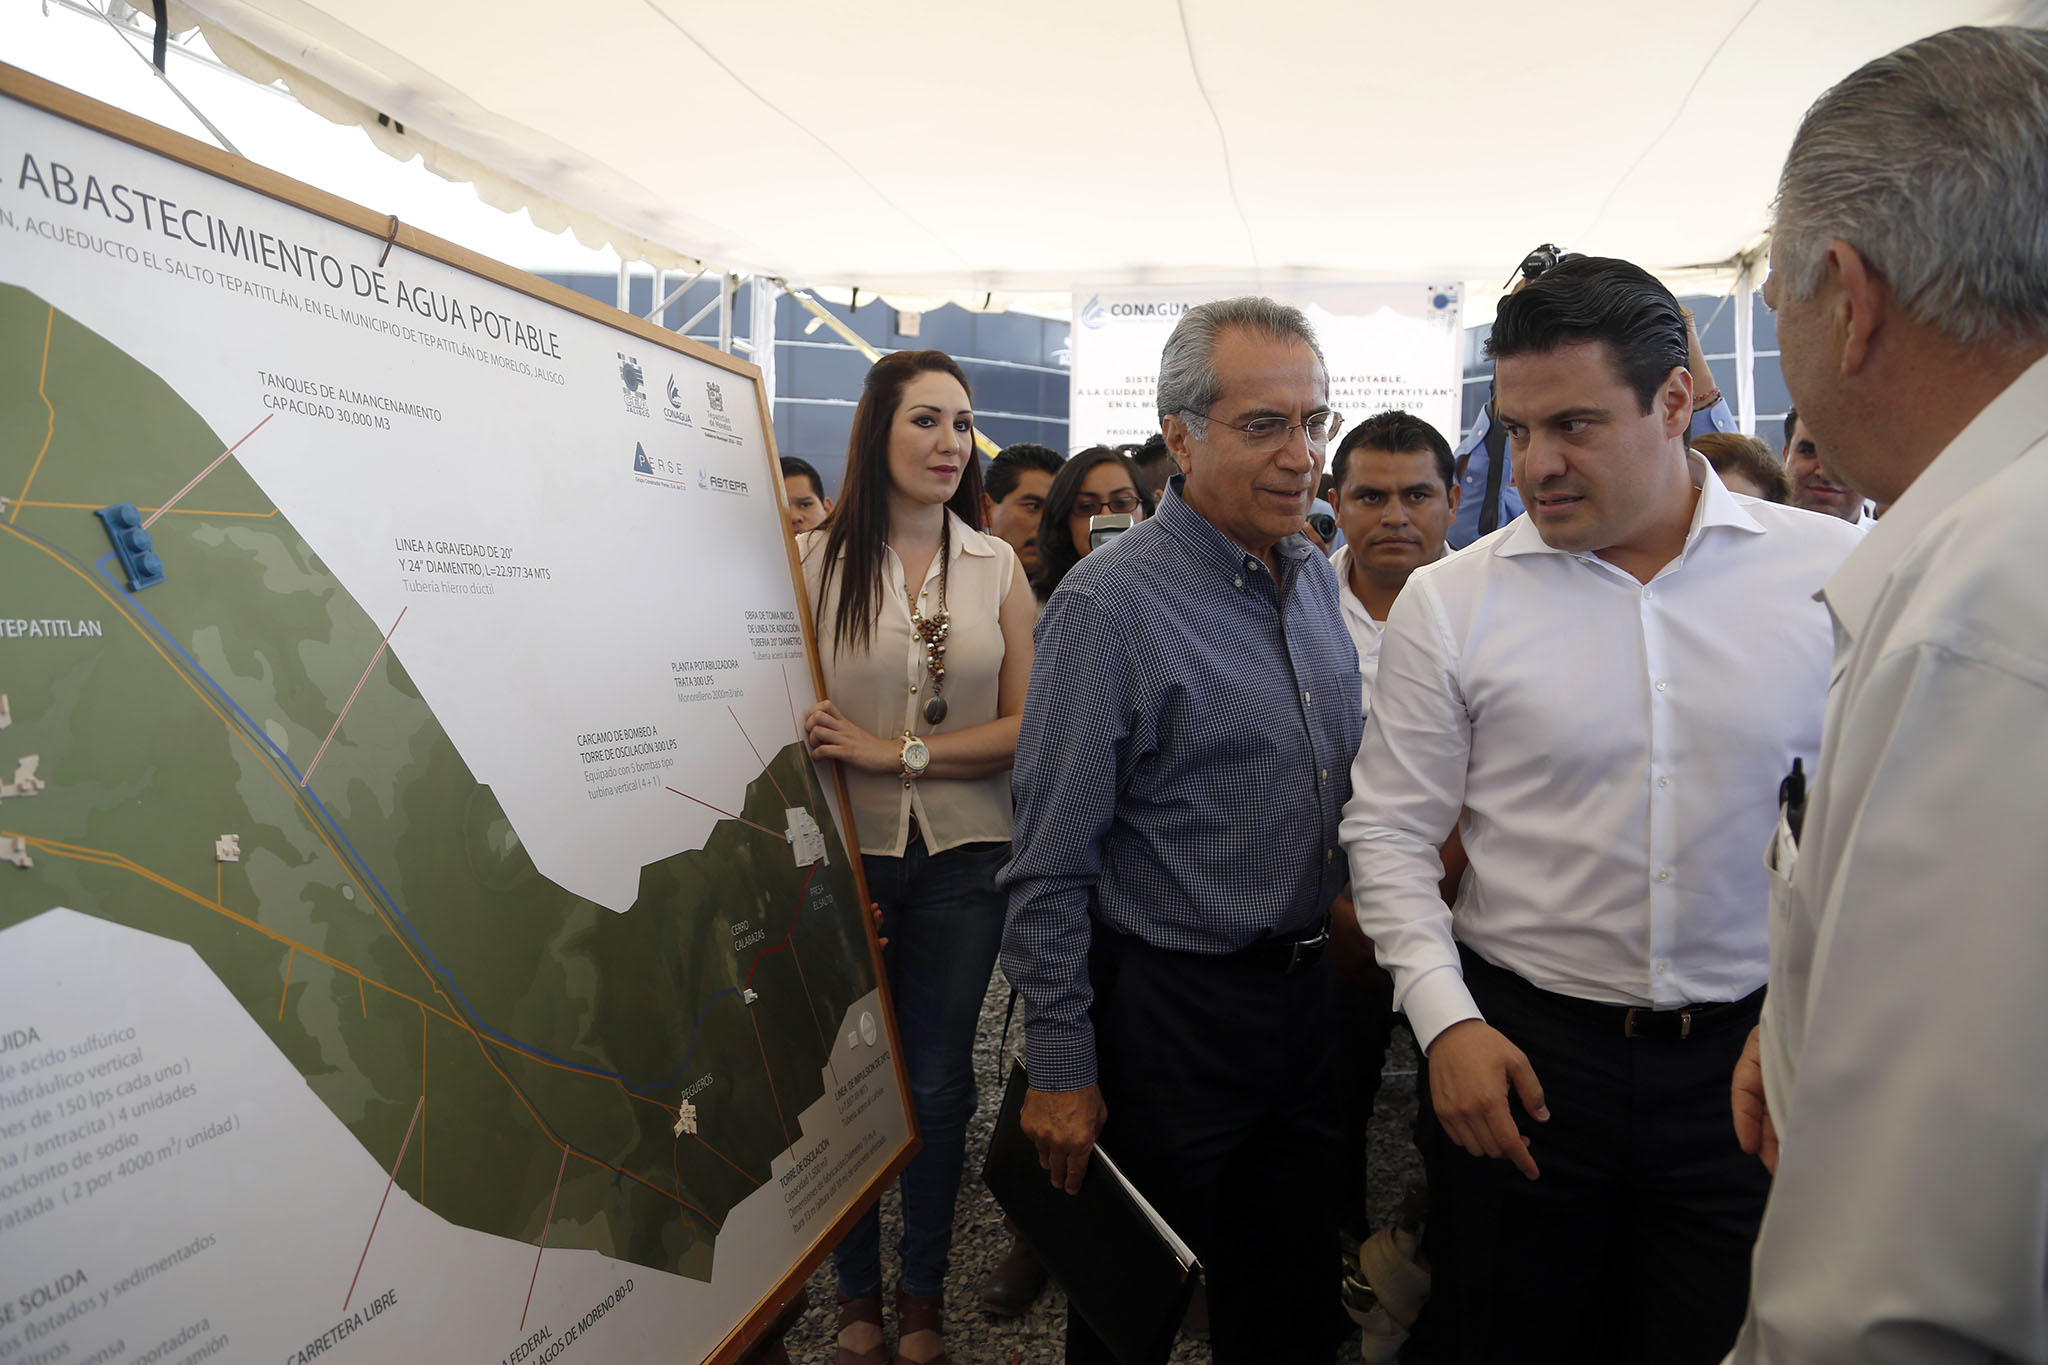 Presenta Gobernador de Jalisco proyecto de abastecimiento de agua para Tepatitlán 